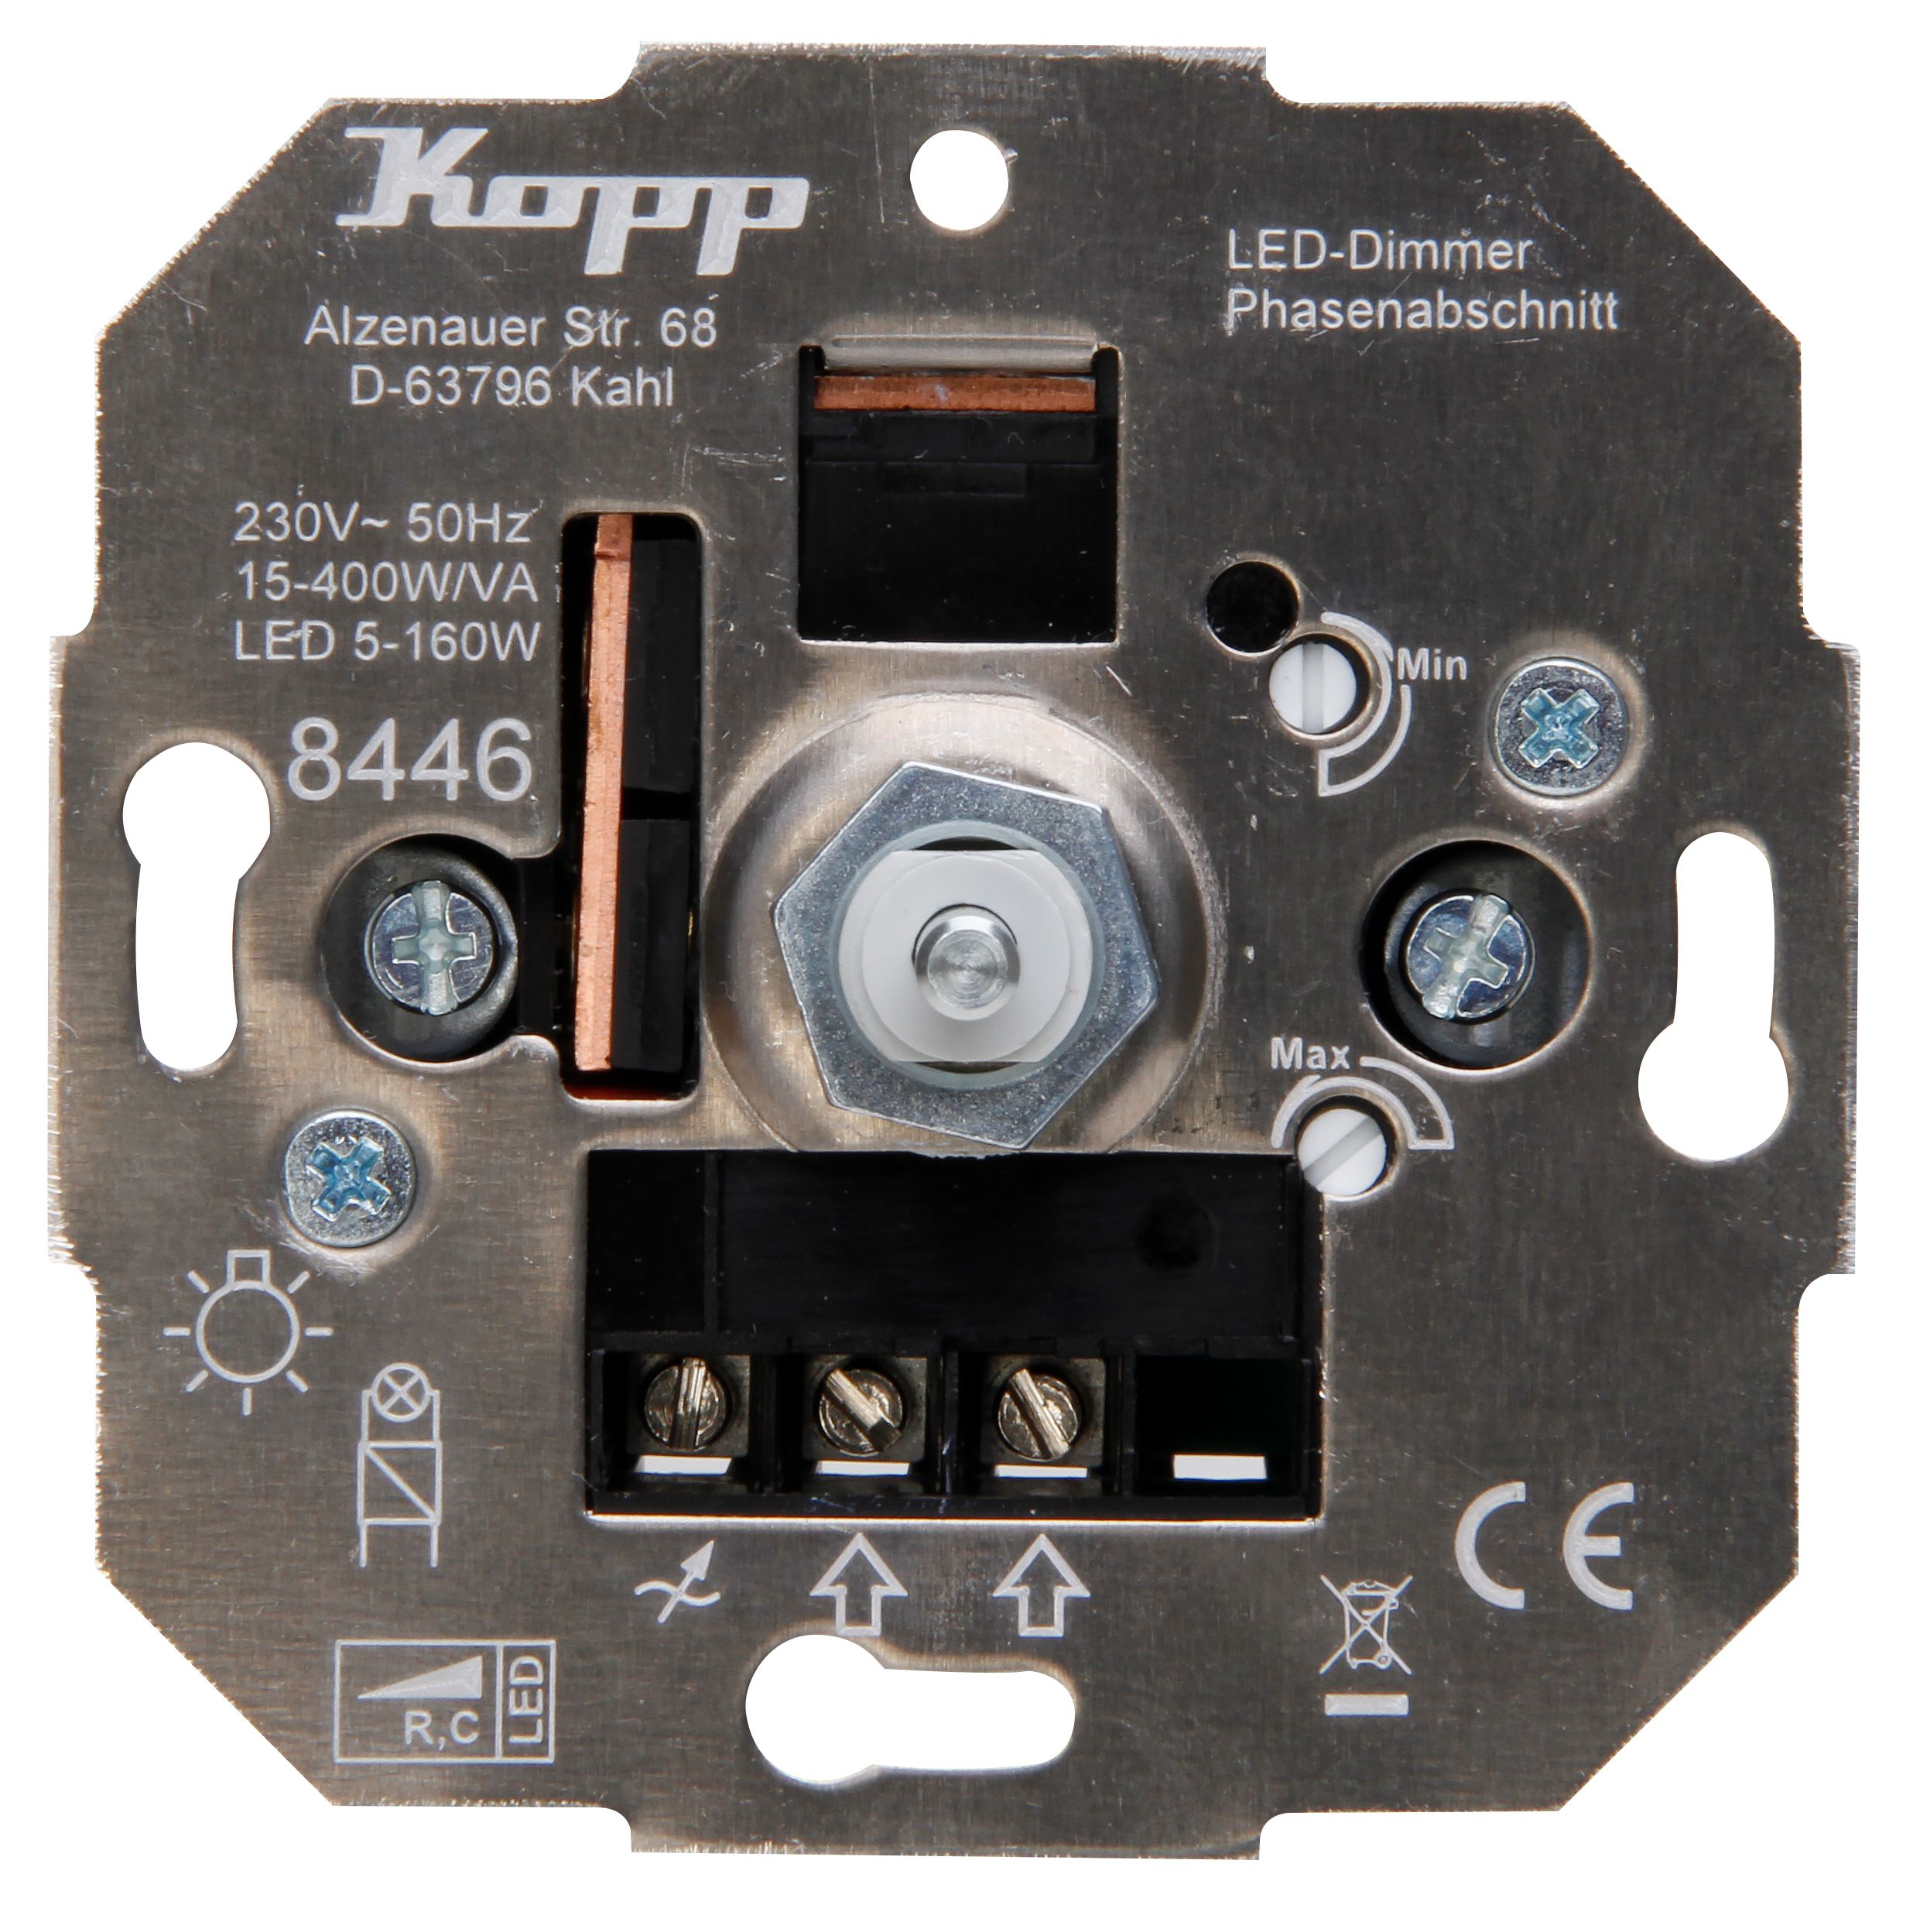 Kopp 844600004 Dimmer Sockel Druck-Wechselschalter LED-Dimmer, LED 5-150W RC